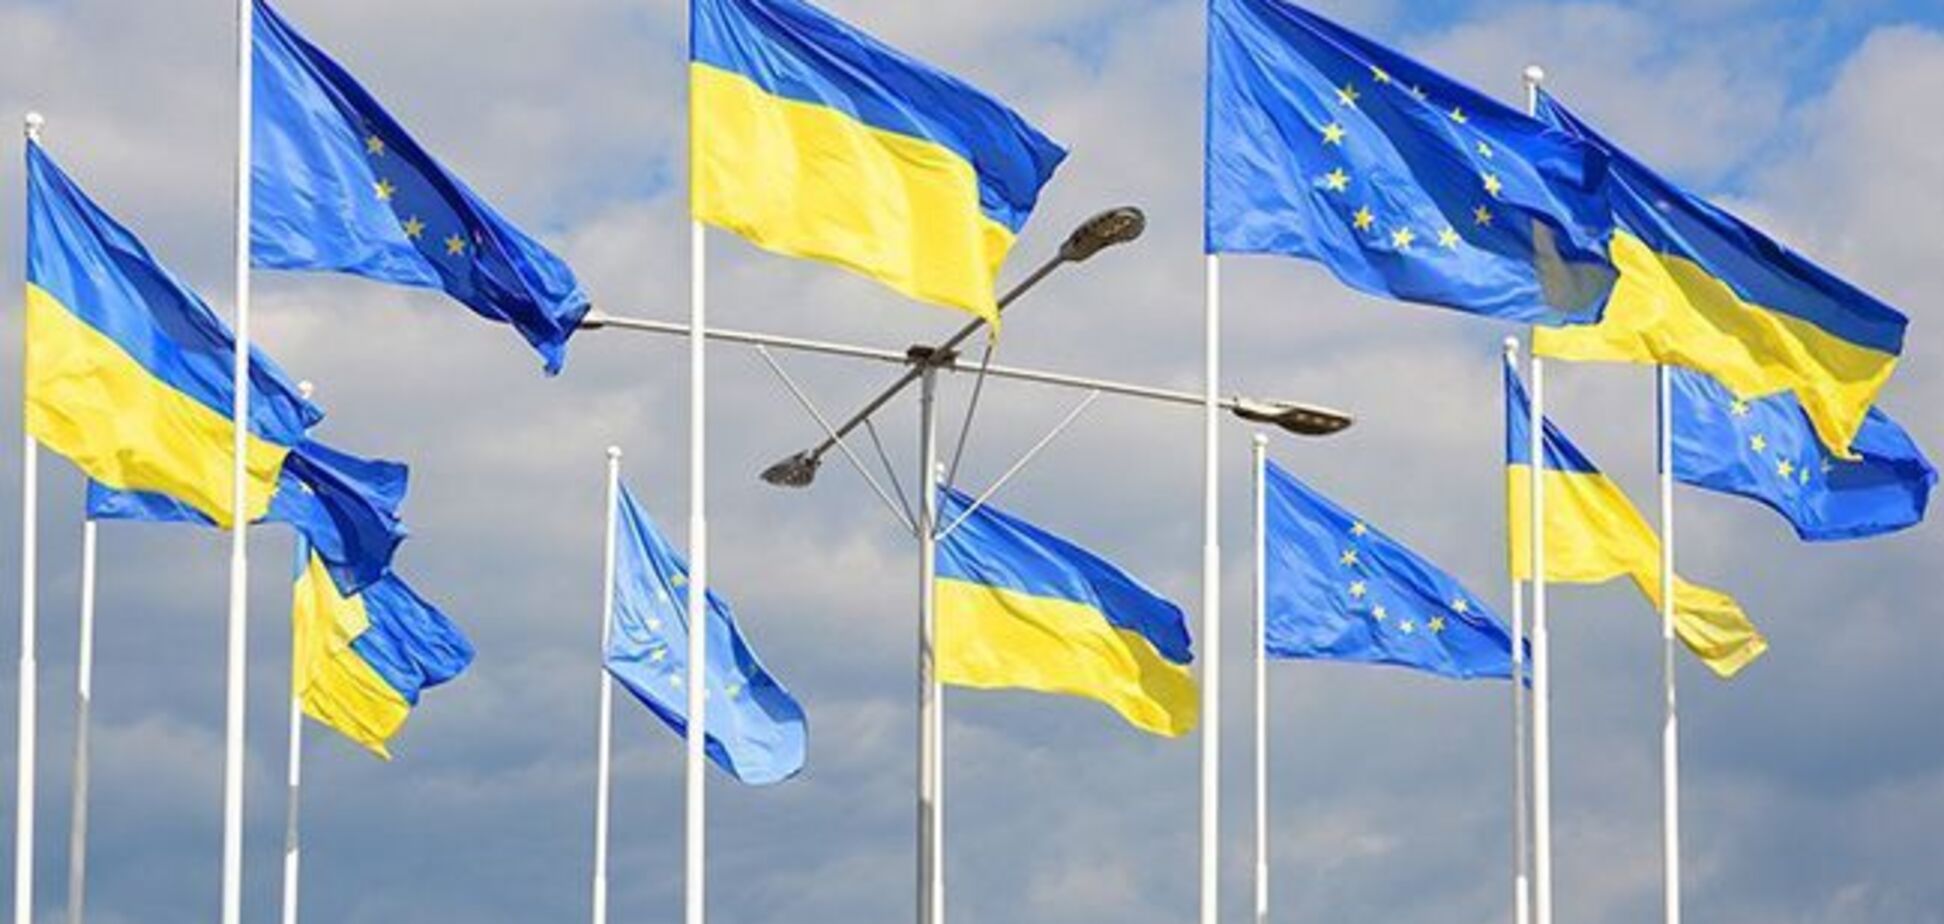 Саміт Україна - ЄС: важливо зберегти спадкоємність та послідовність на європейському напрямку